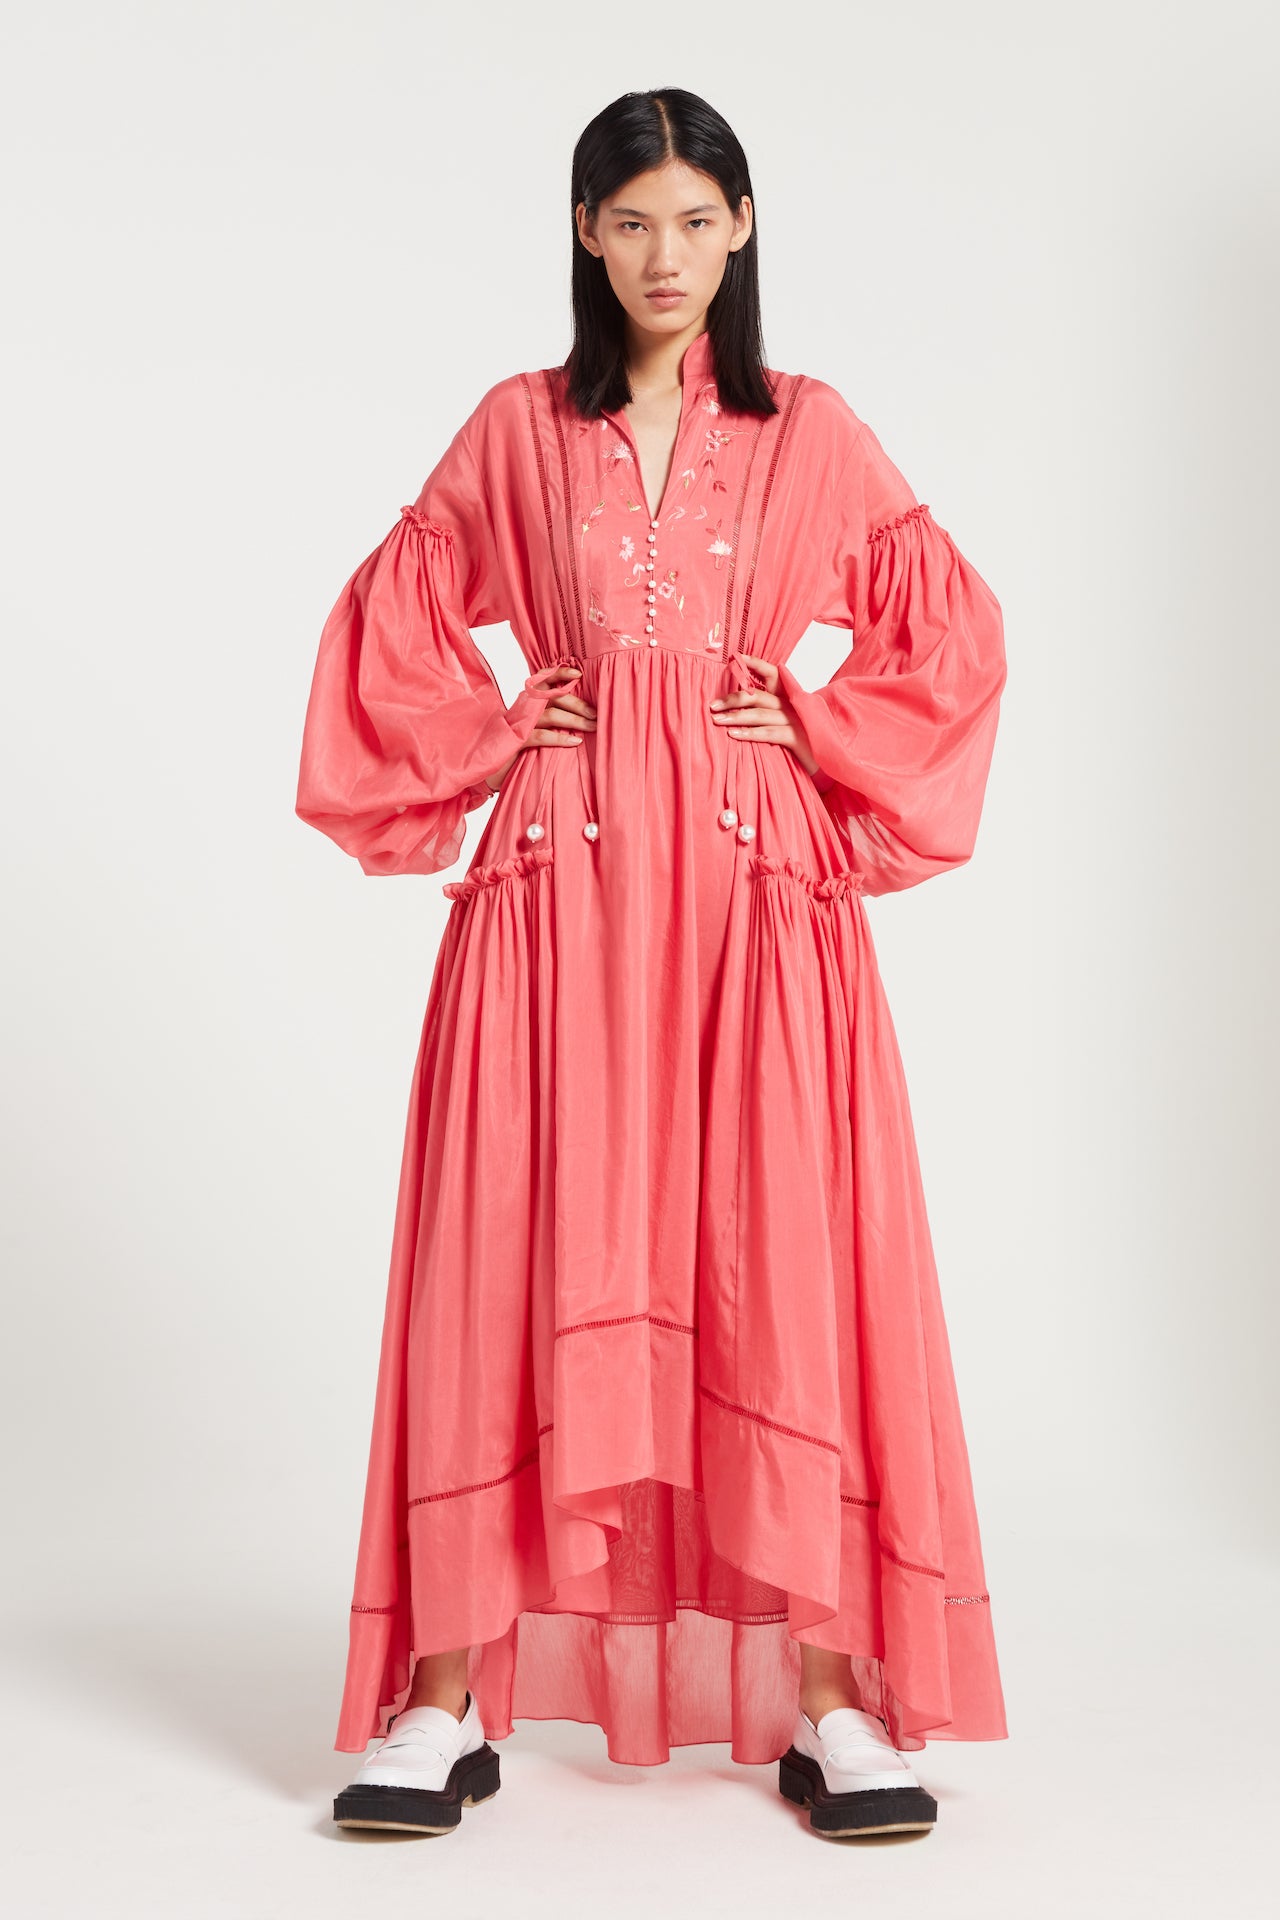 Juno Dress in Raspberry | Noon By Noor